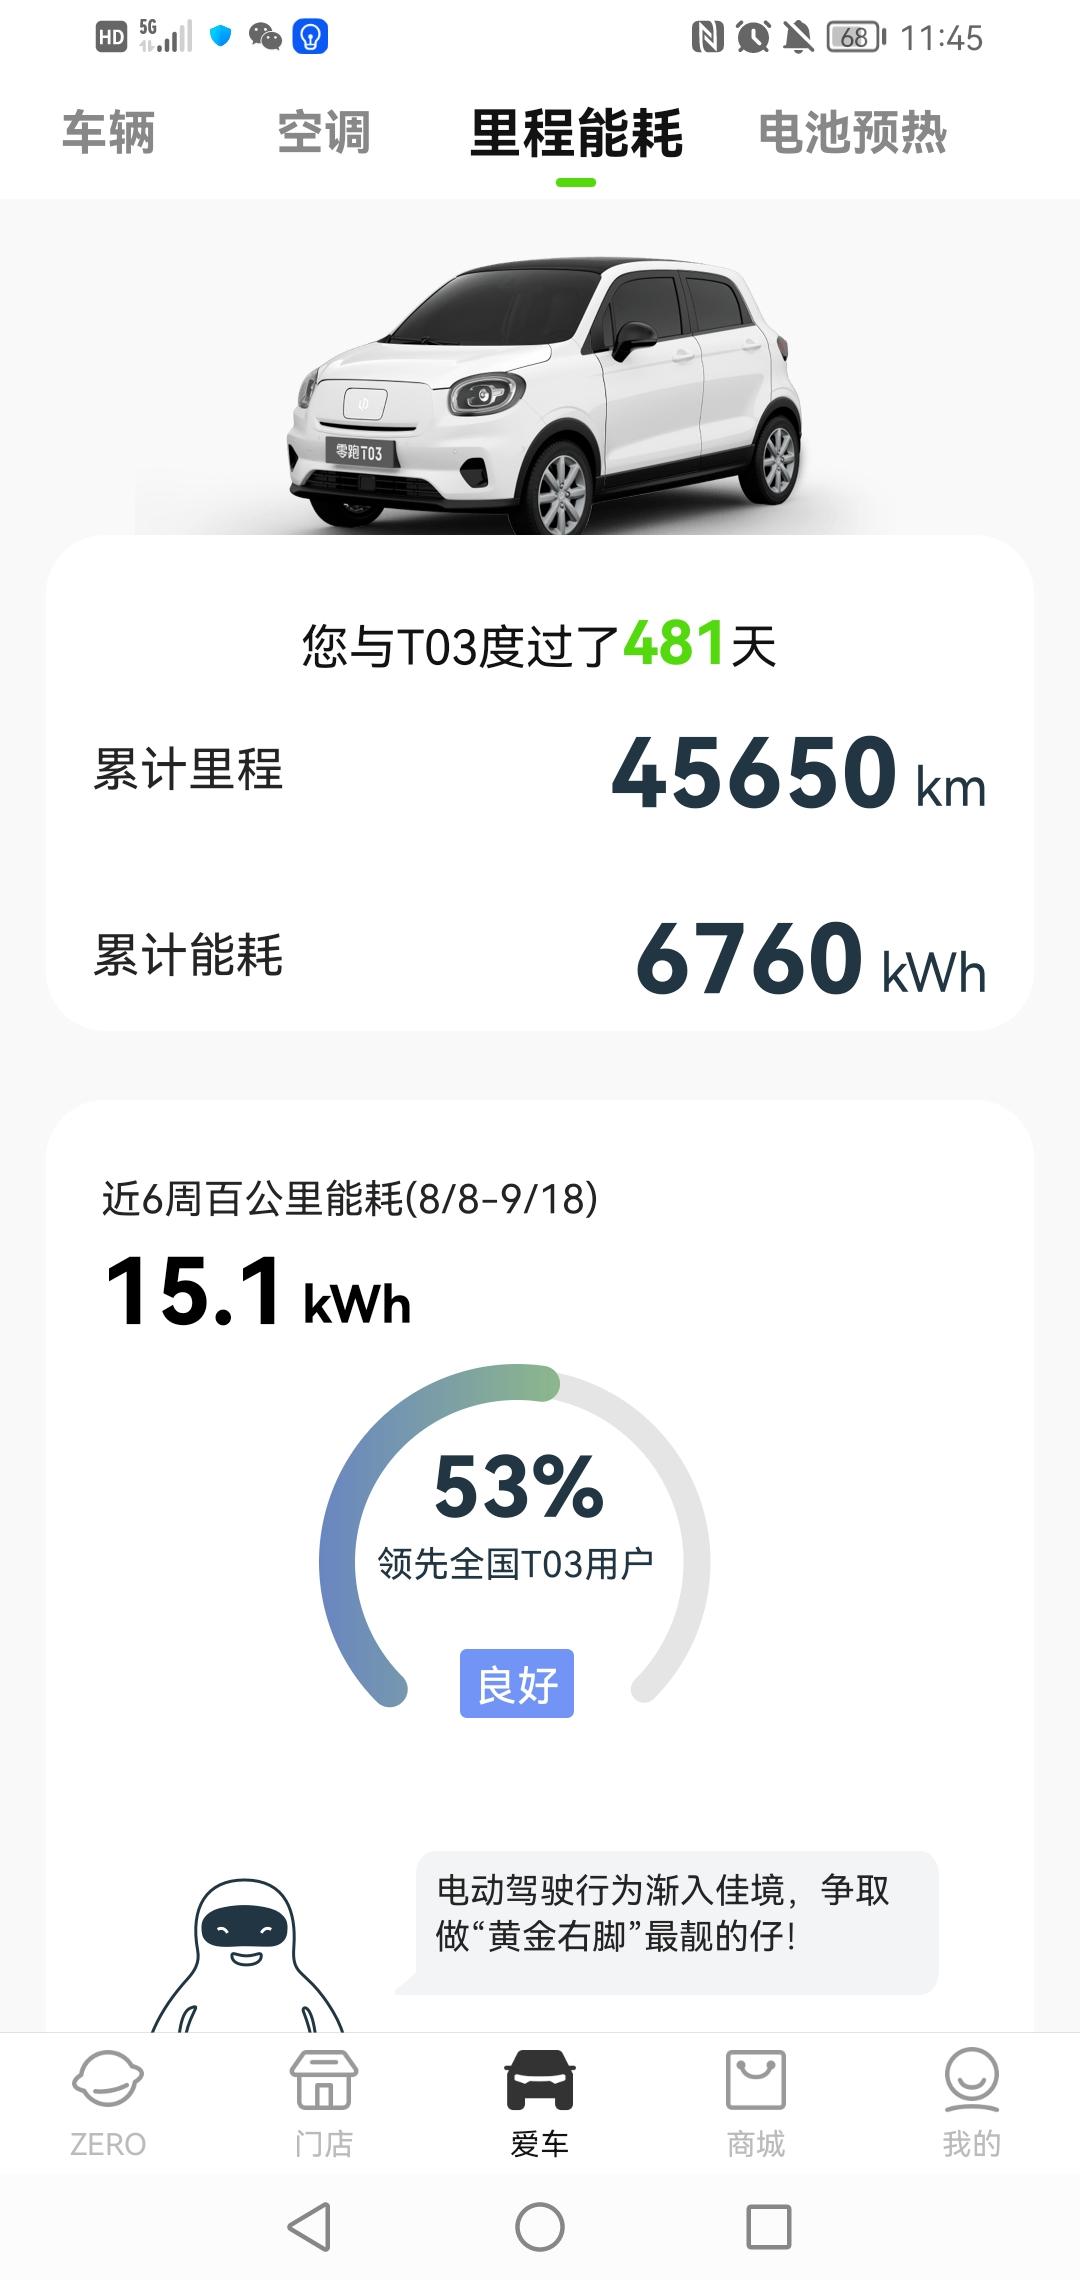 零跑零跑T03 一年3个月，4.56万公里，6760度电。你看看这能耗高不高？坐标湖北武汉